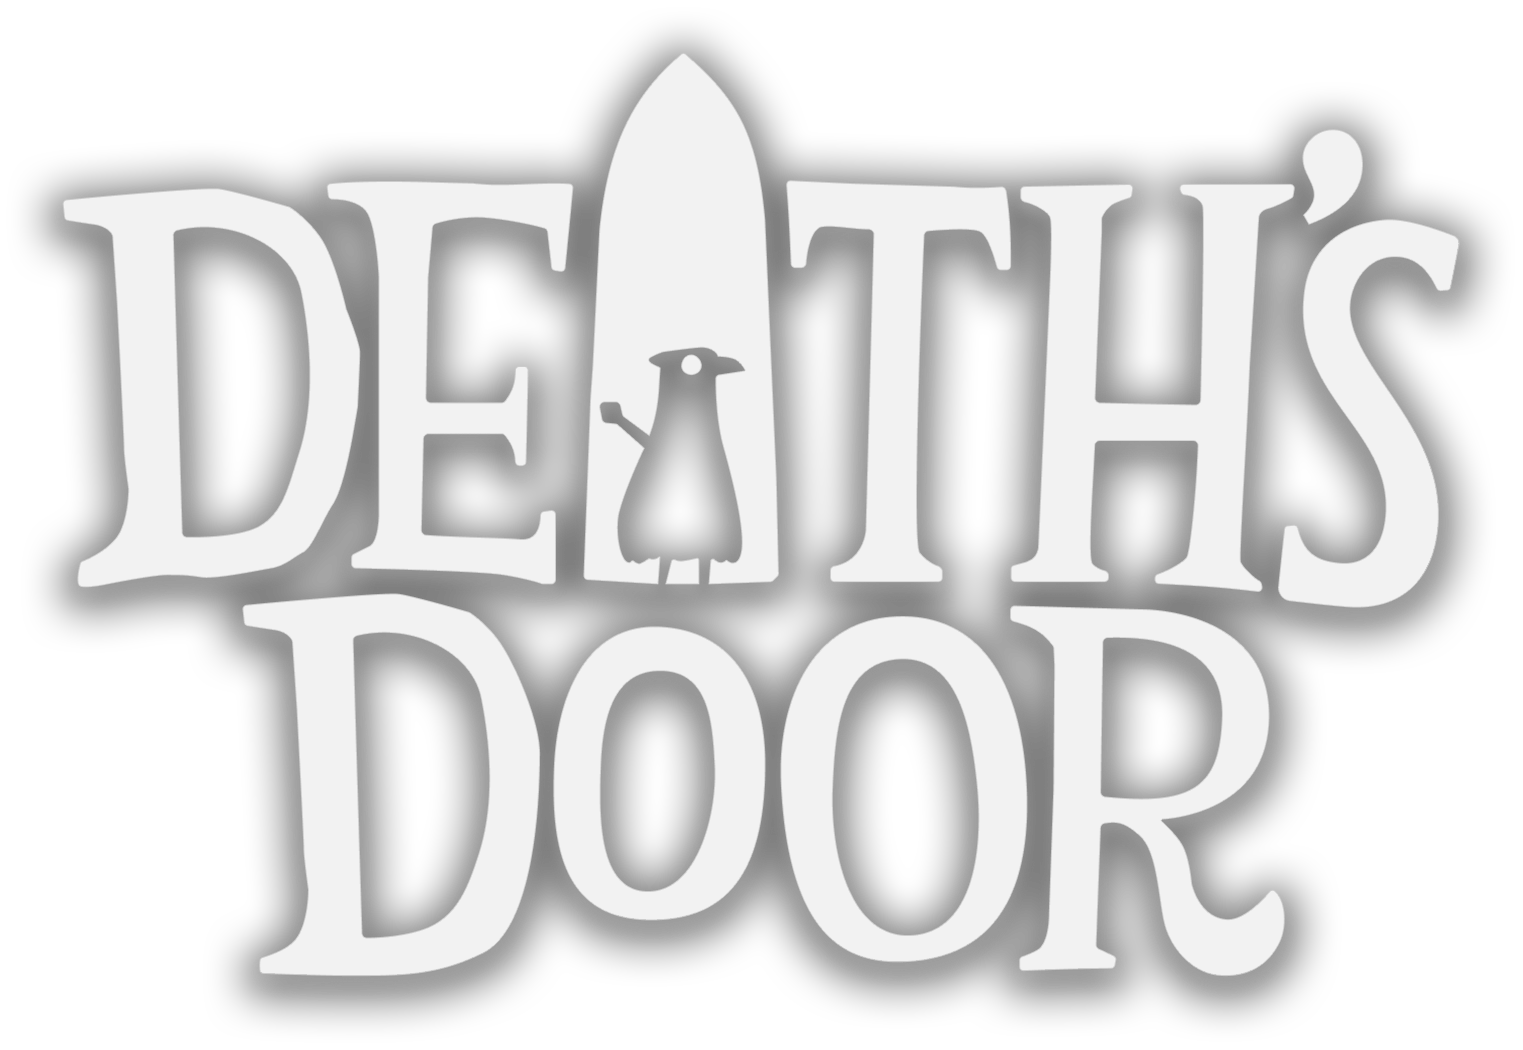 Death door игра. Death's Door игра. Логотип игры Дорс. Death логотип. Значок игры Doors.